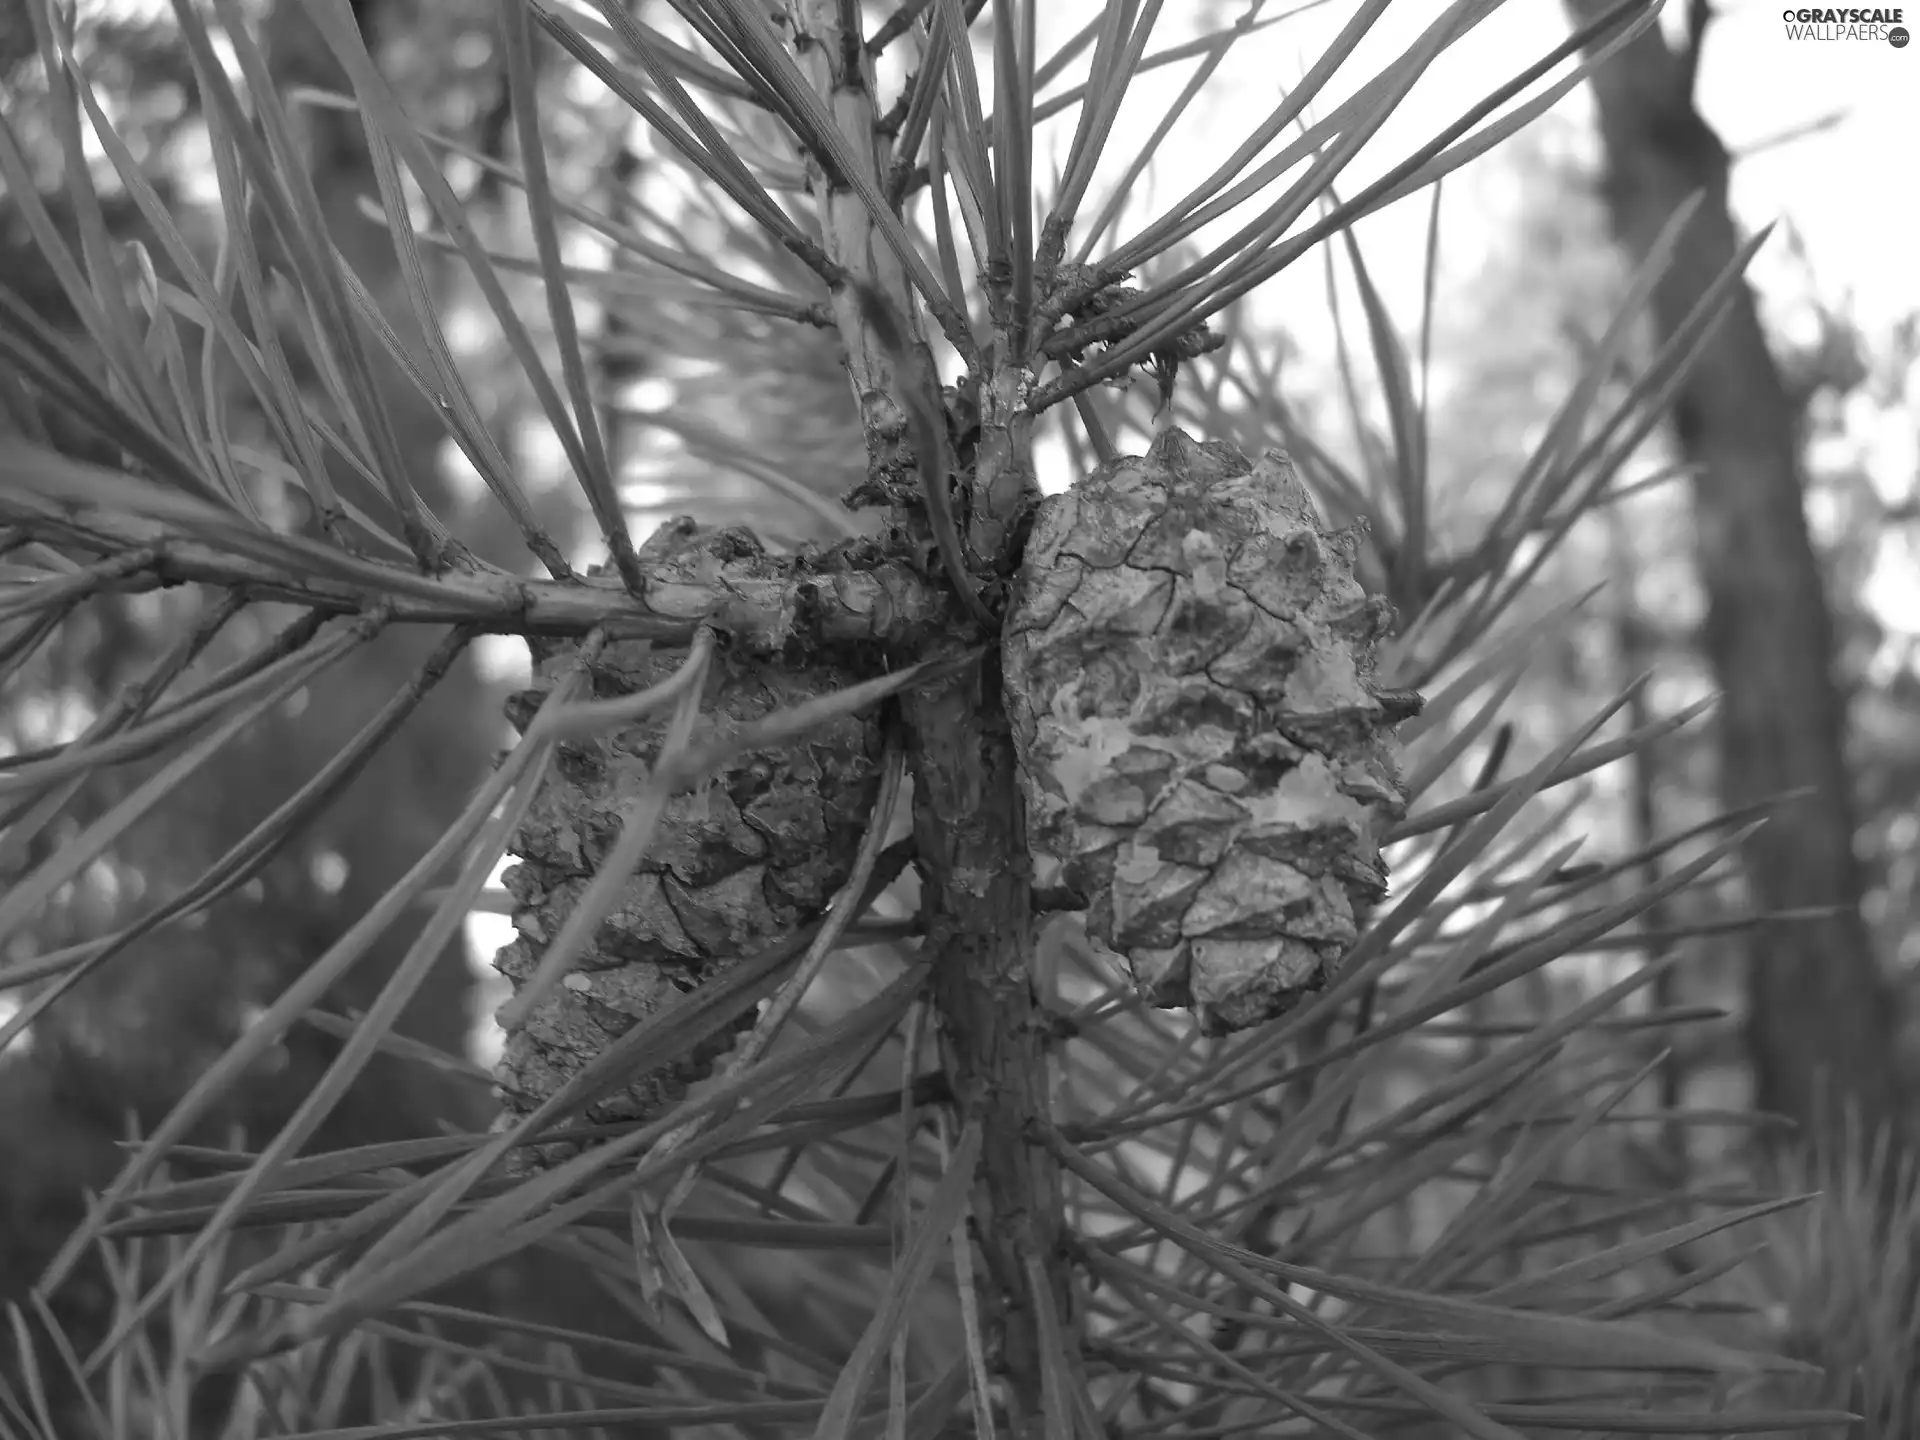 trees, pine, cones